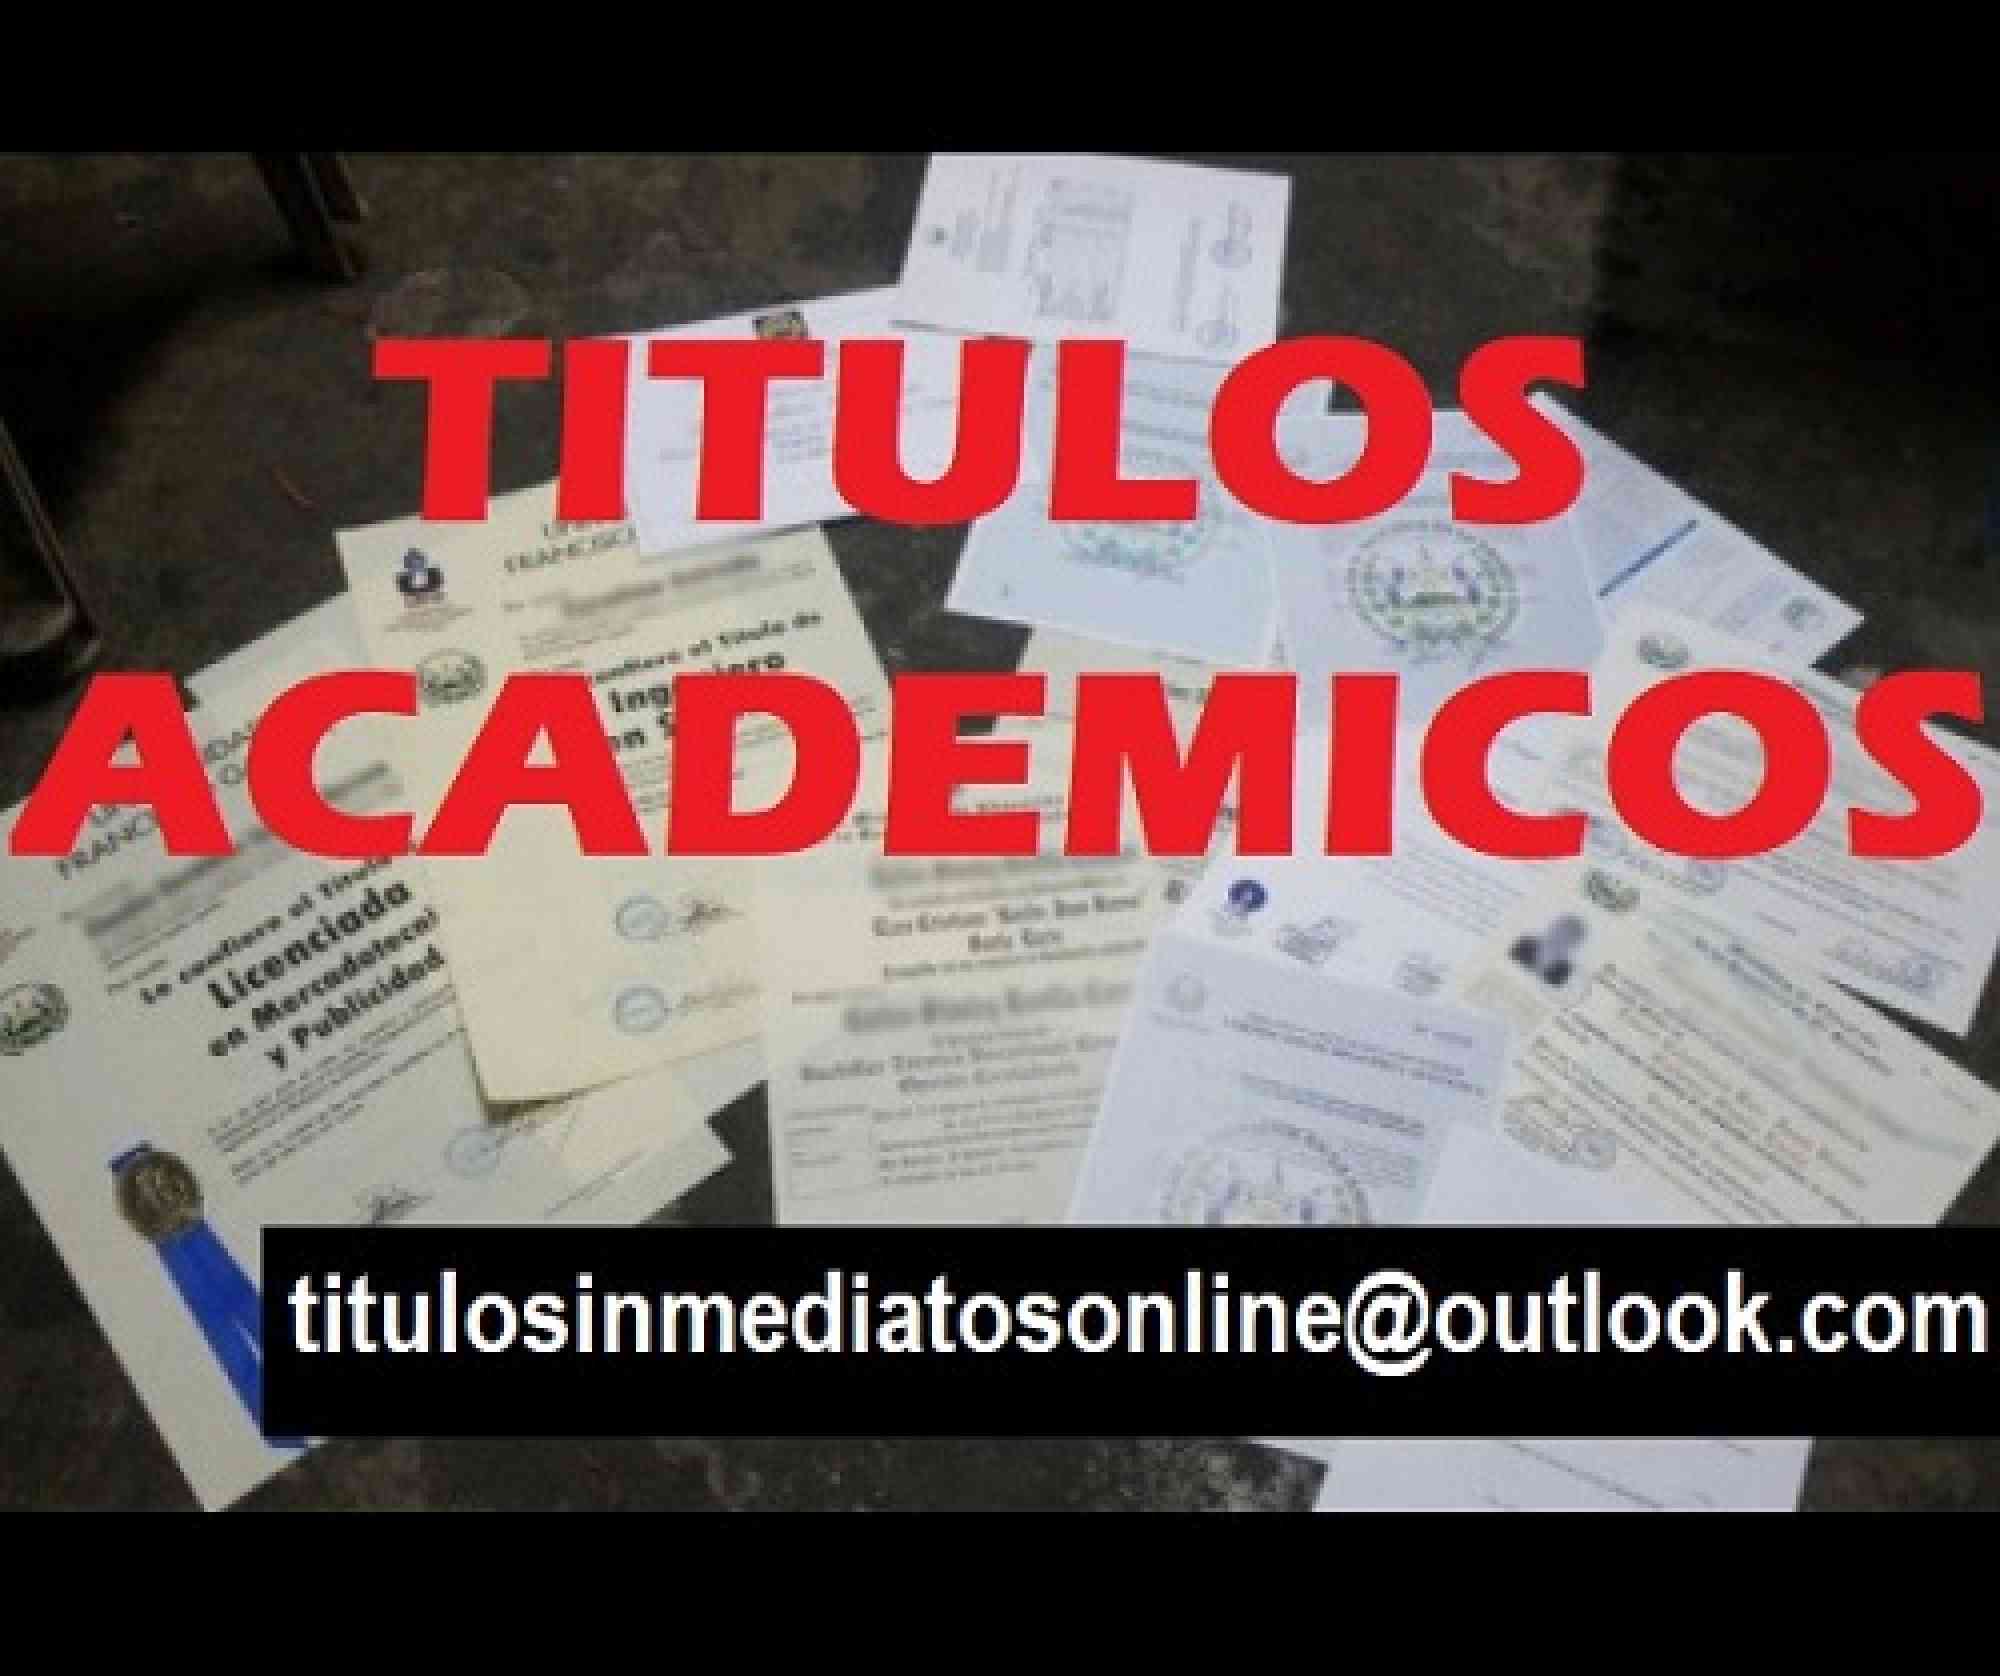 Titulos academicos inmediatos en anuncio clasificado